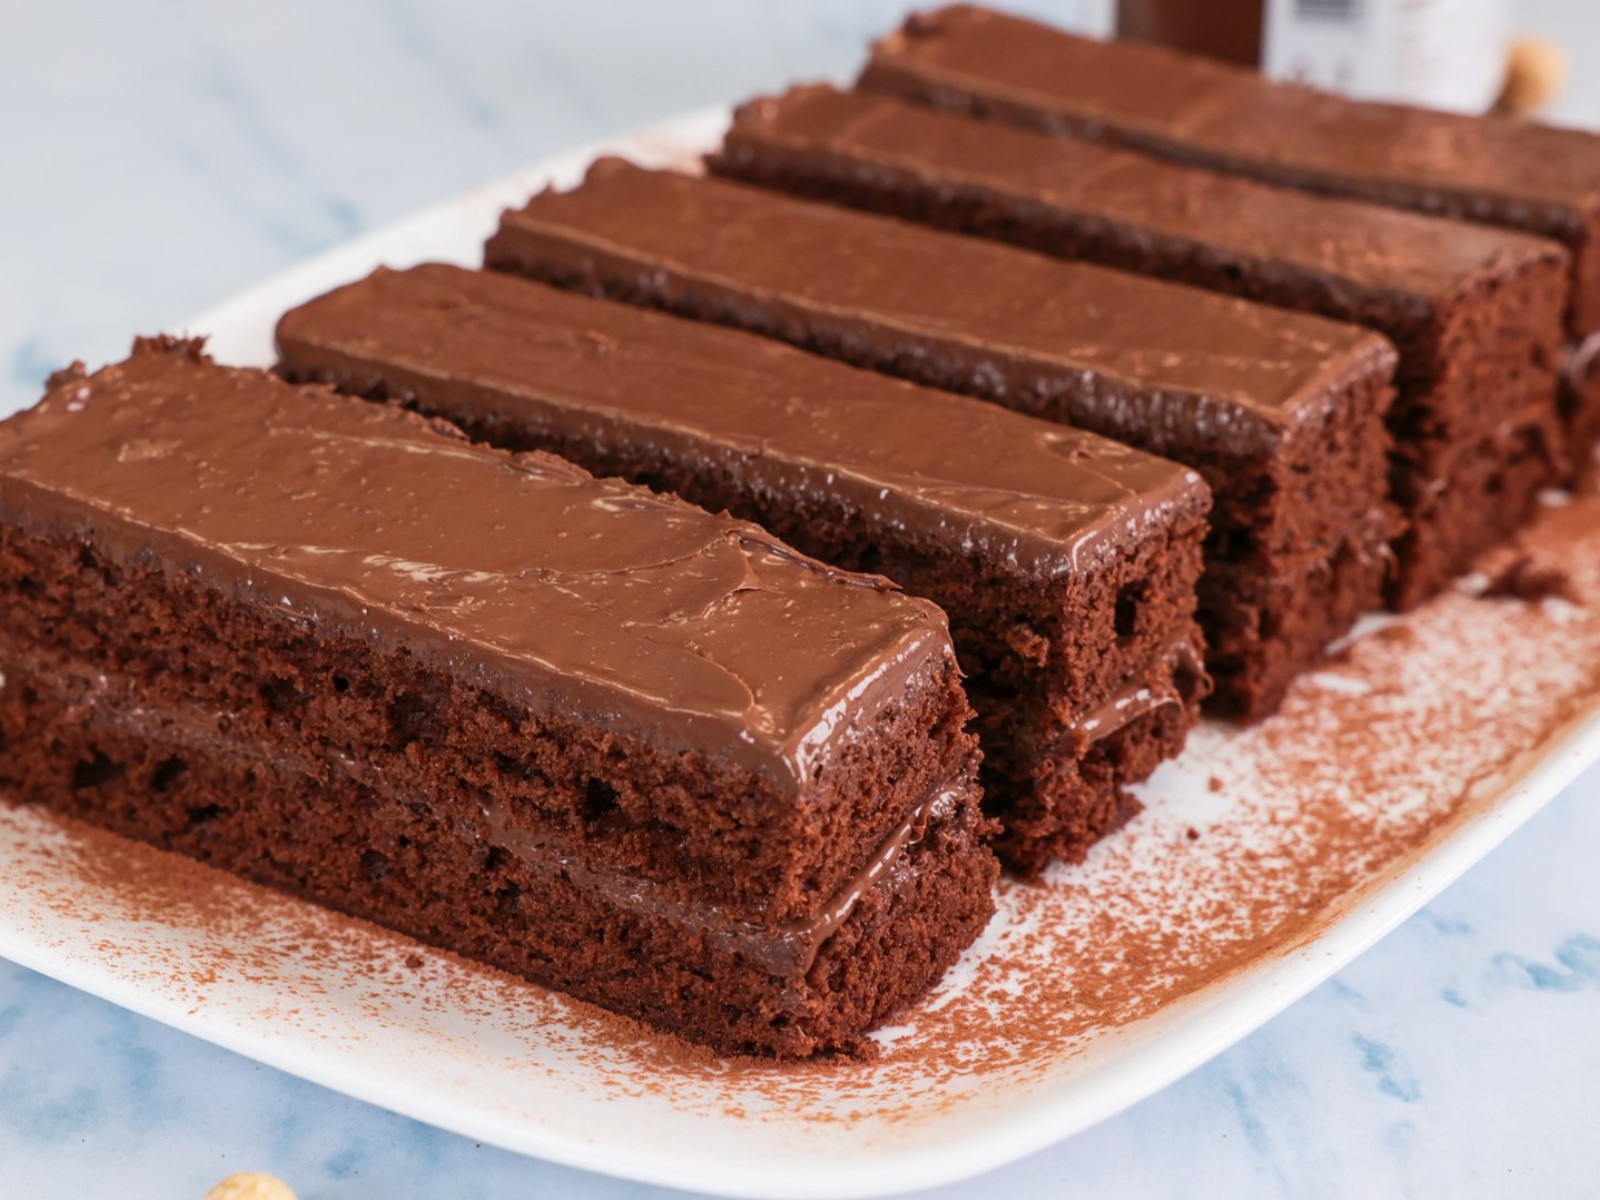 κέικ σοκολάτα-με-στέβια-χωρίς ζάχαρη-συνταγή-